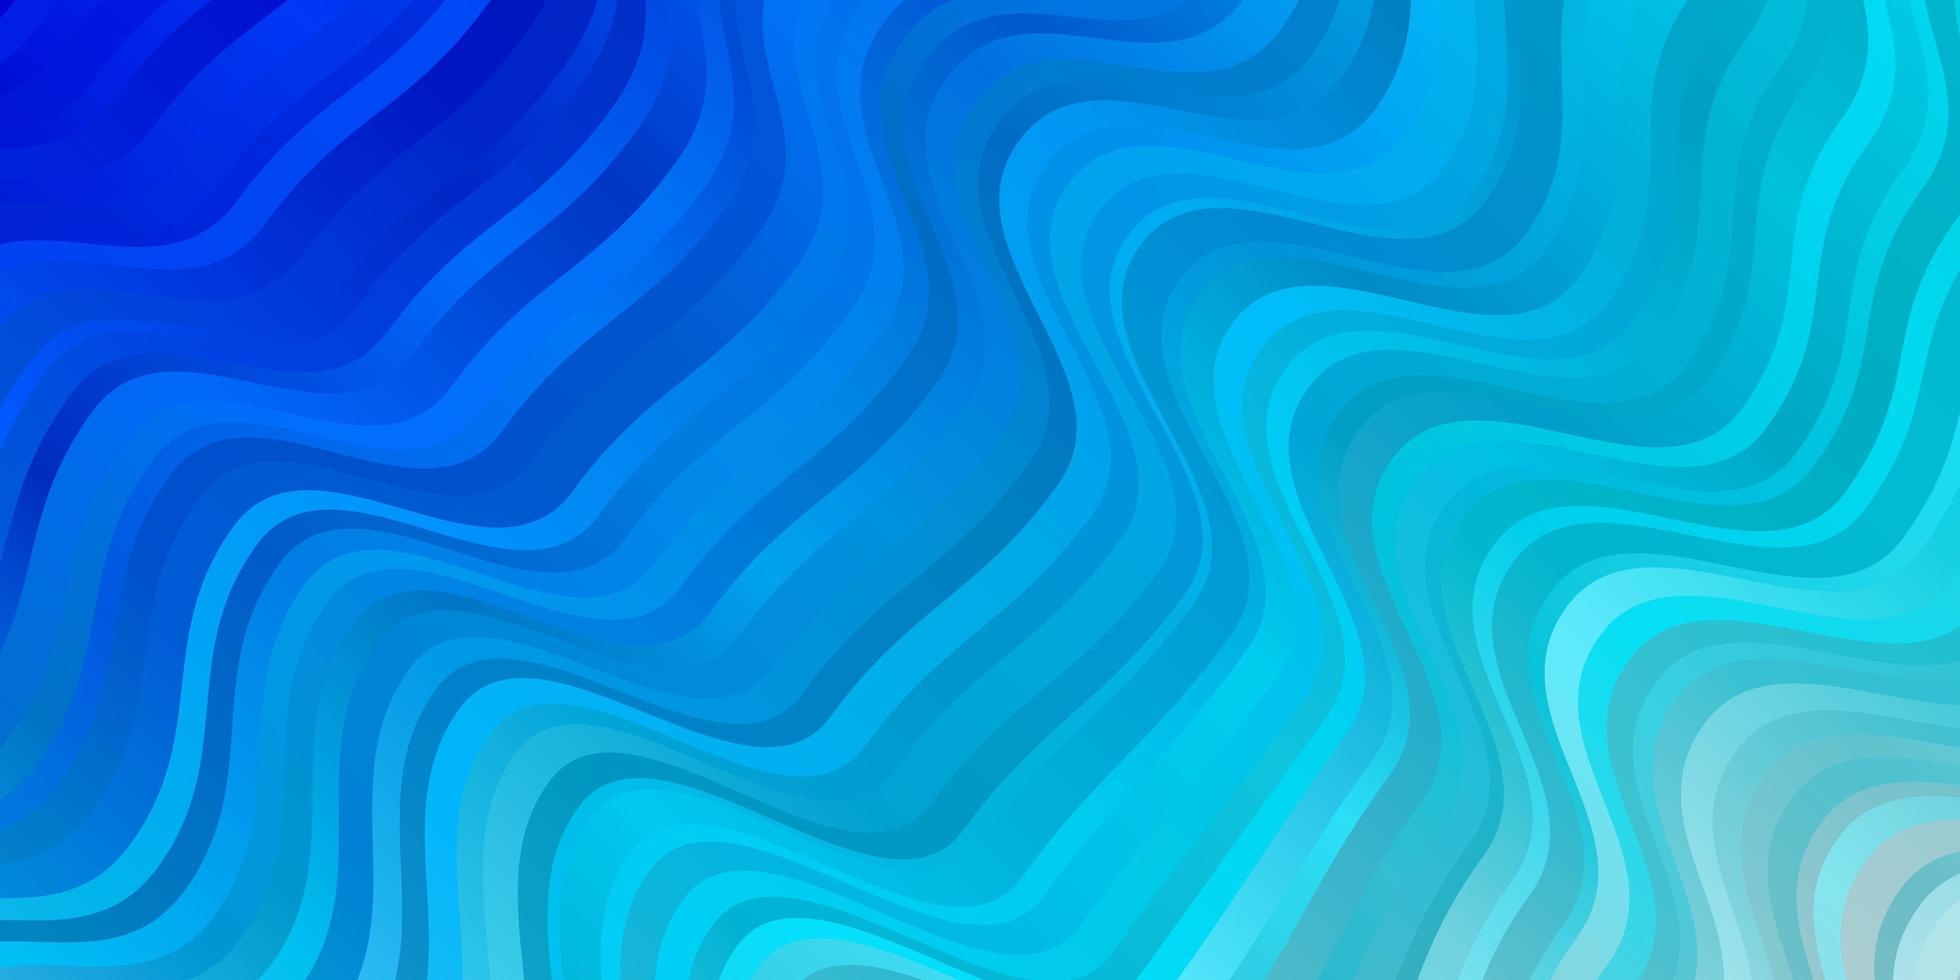 patrón de vector azul claro con líneas torcidas. Ilustración en estilo abstracto con degradado curvo. plantilla para su diseño de interfaz de usuario.